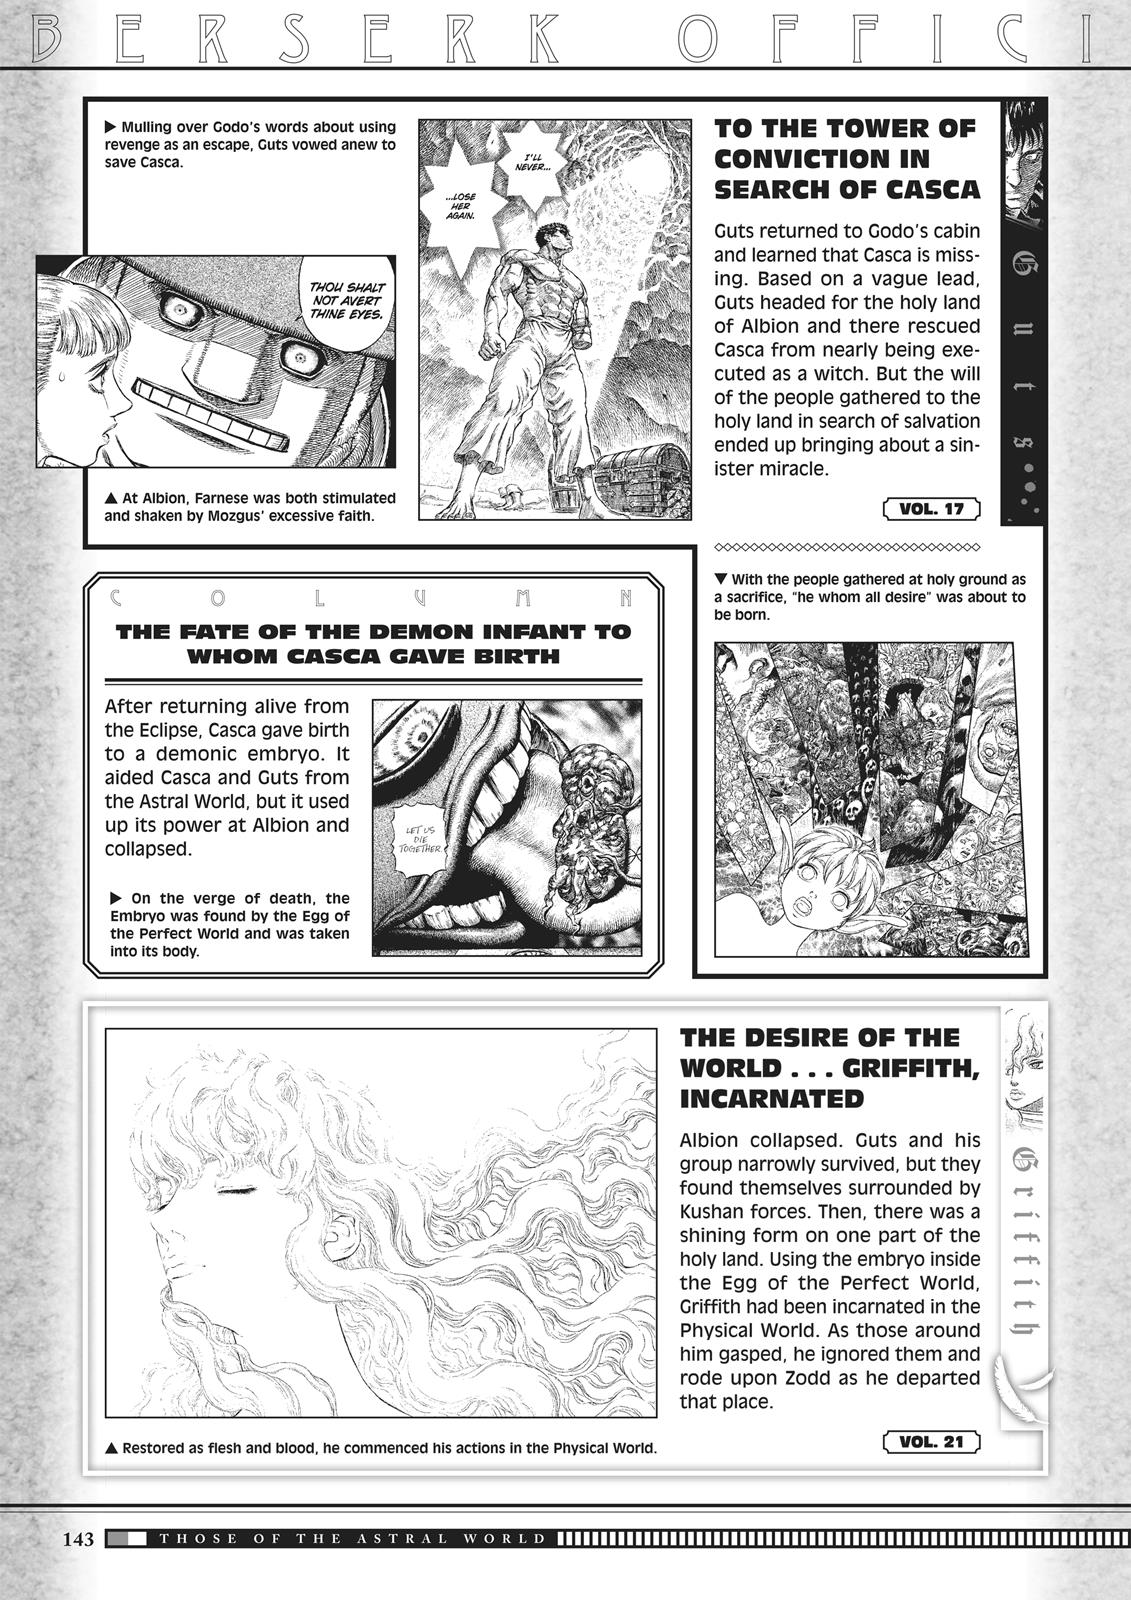 Berserk Manga Chapter 350.5 image 141